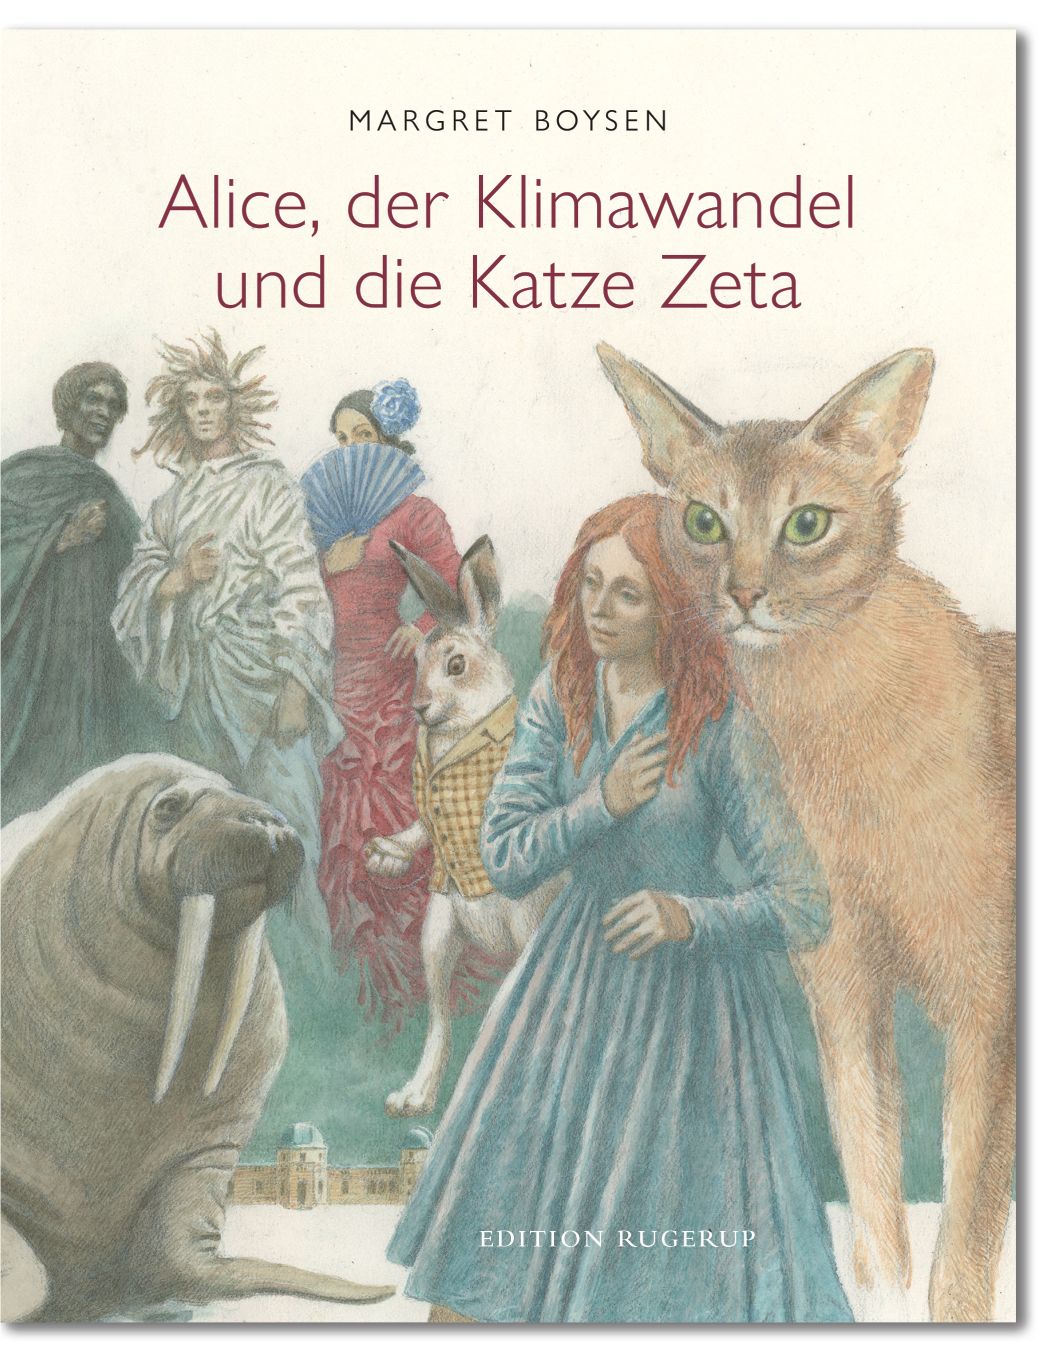 Alice, der Klimawandel und die Katze Zeta, Margret Boysen - Edition-rugerup.de Cover illustration Iassen Ghiuselev - Titel © PIK